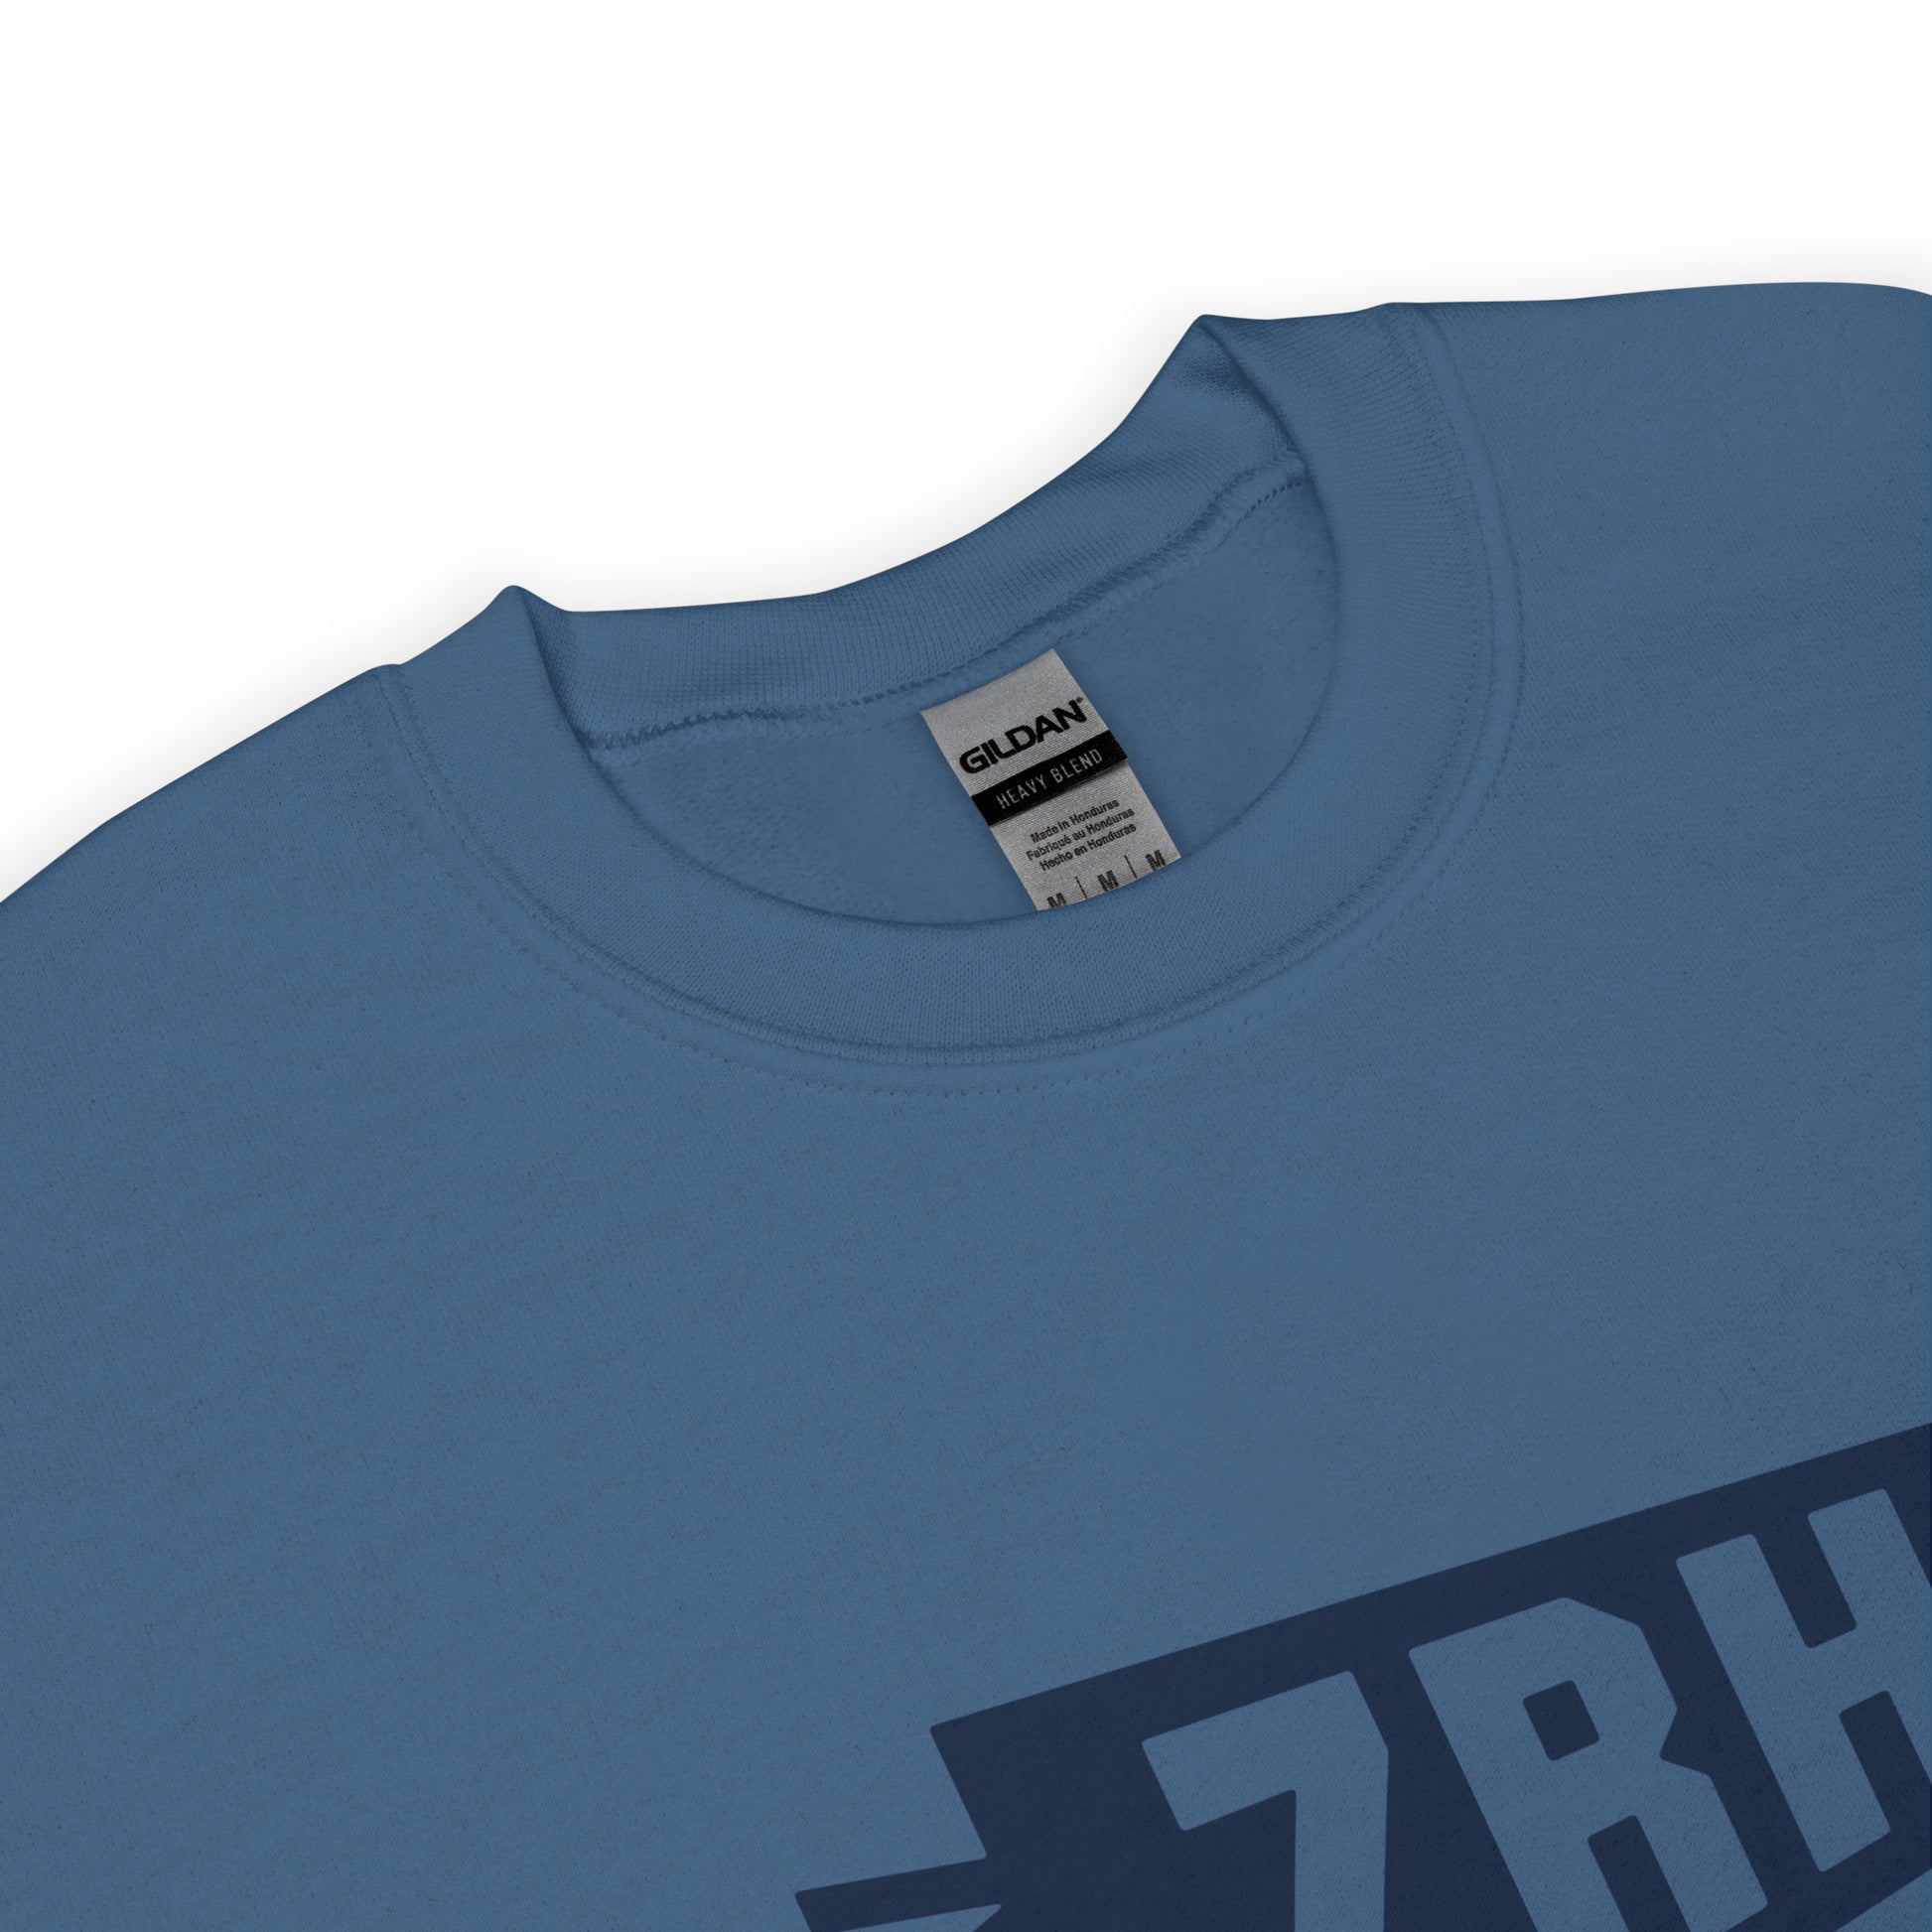 Airport Code Sweatshirt - Navy Blue Graphic • ZRH Zurich • YHM Designs - Image 04